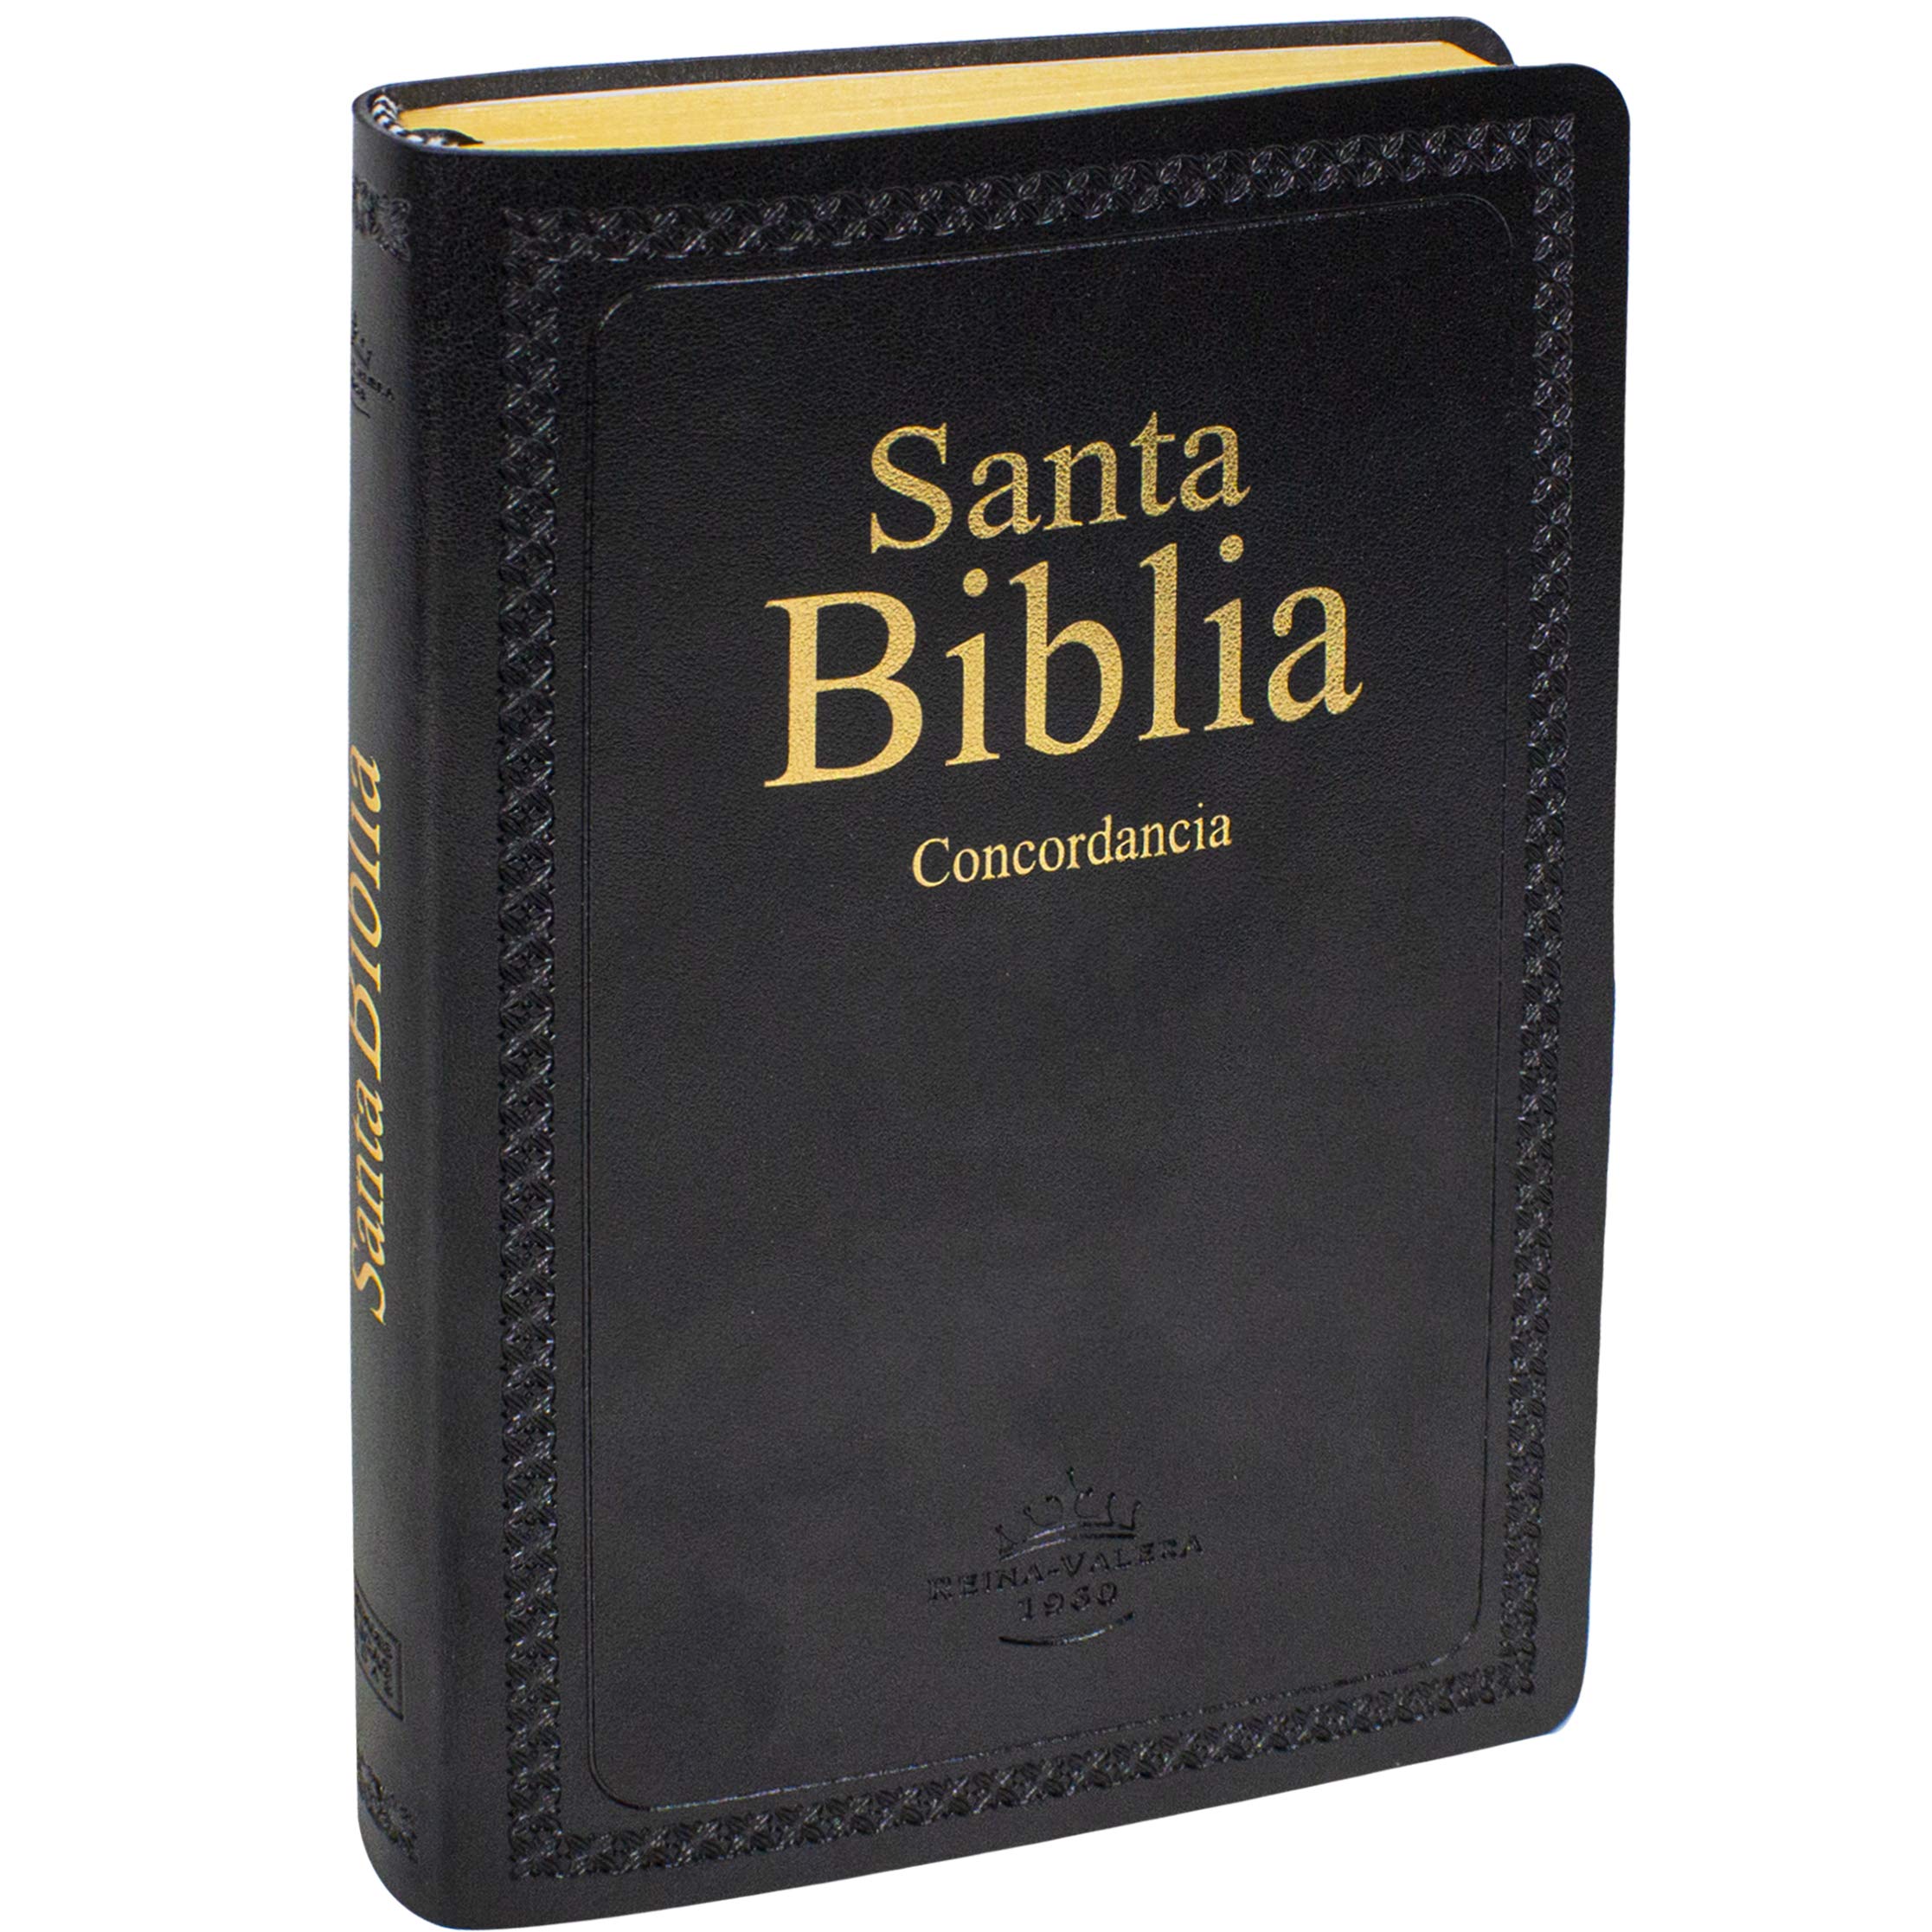 Biblia RVR1960, imit. piel suave negro, con concordancia, canto amarillo  de Sociedades Biblicas Unidas